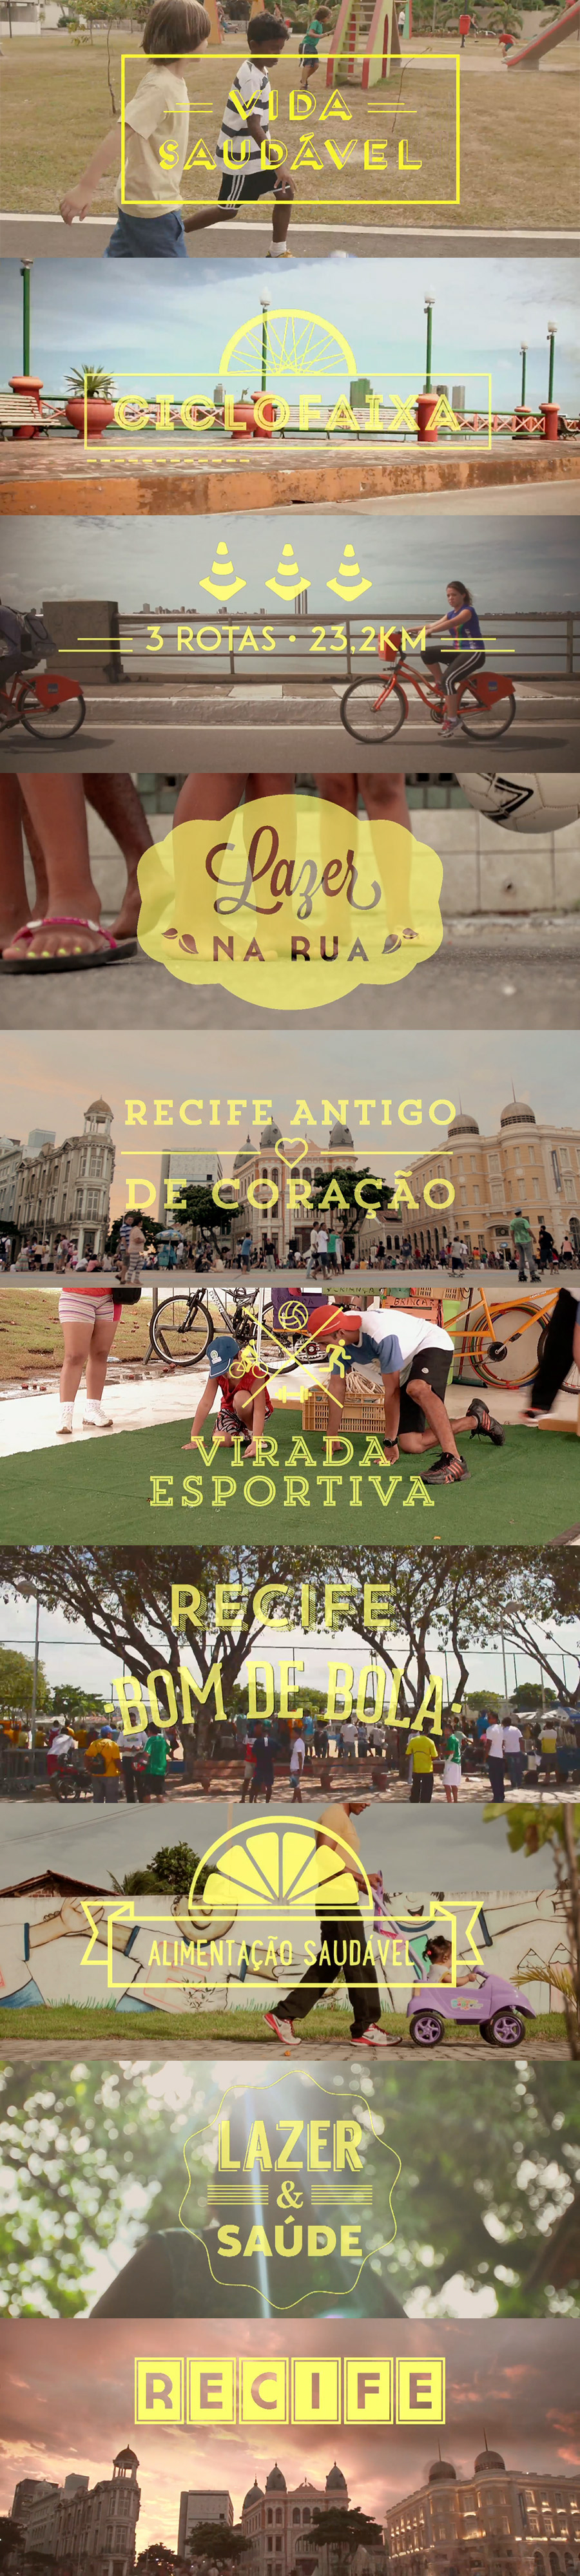 Prefeitura do Recife recife Propaganda video vt saúde ciclofaixa taryn Taryn Polieste